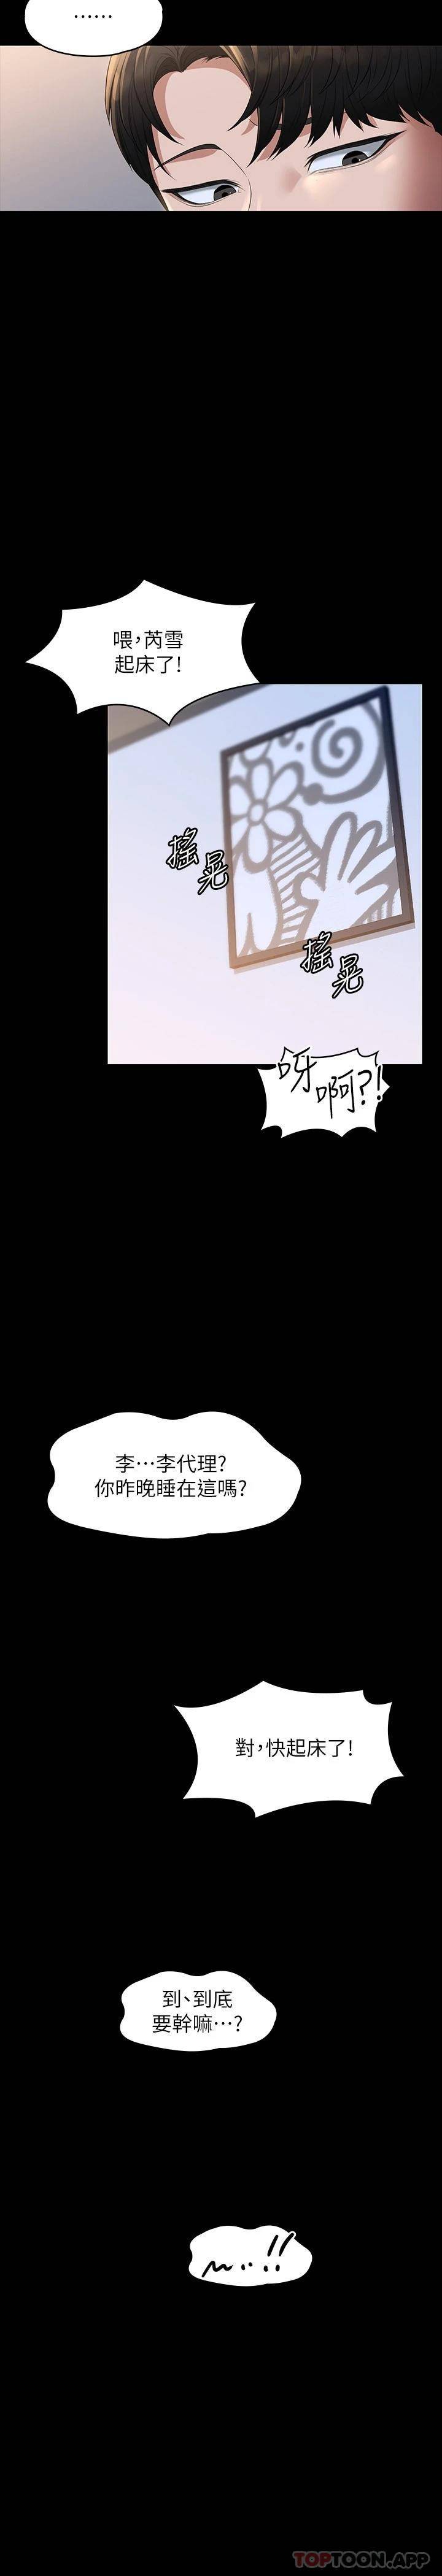 韩国污漫画 超級公務員 第40话 呻吟和咆哮交织的夜晚 28